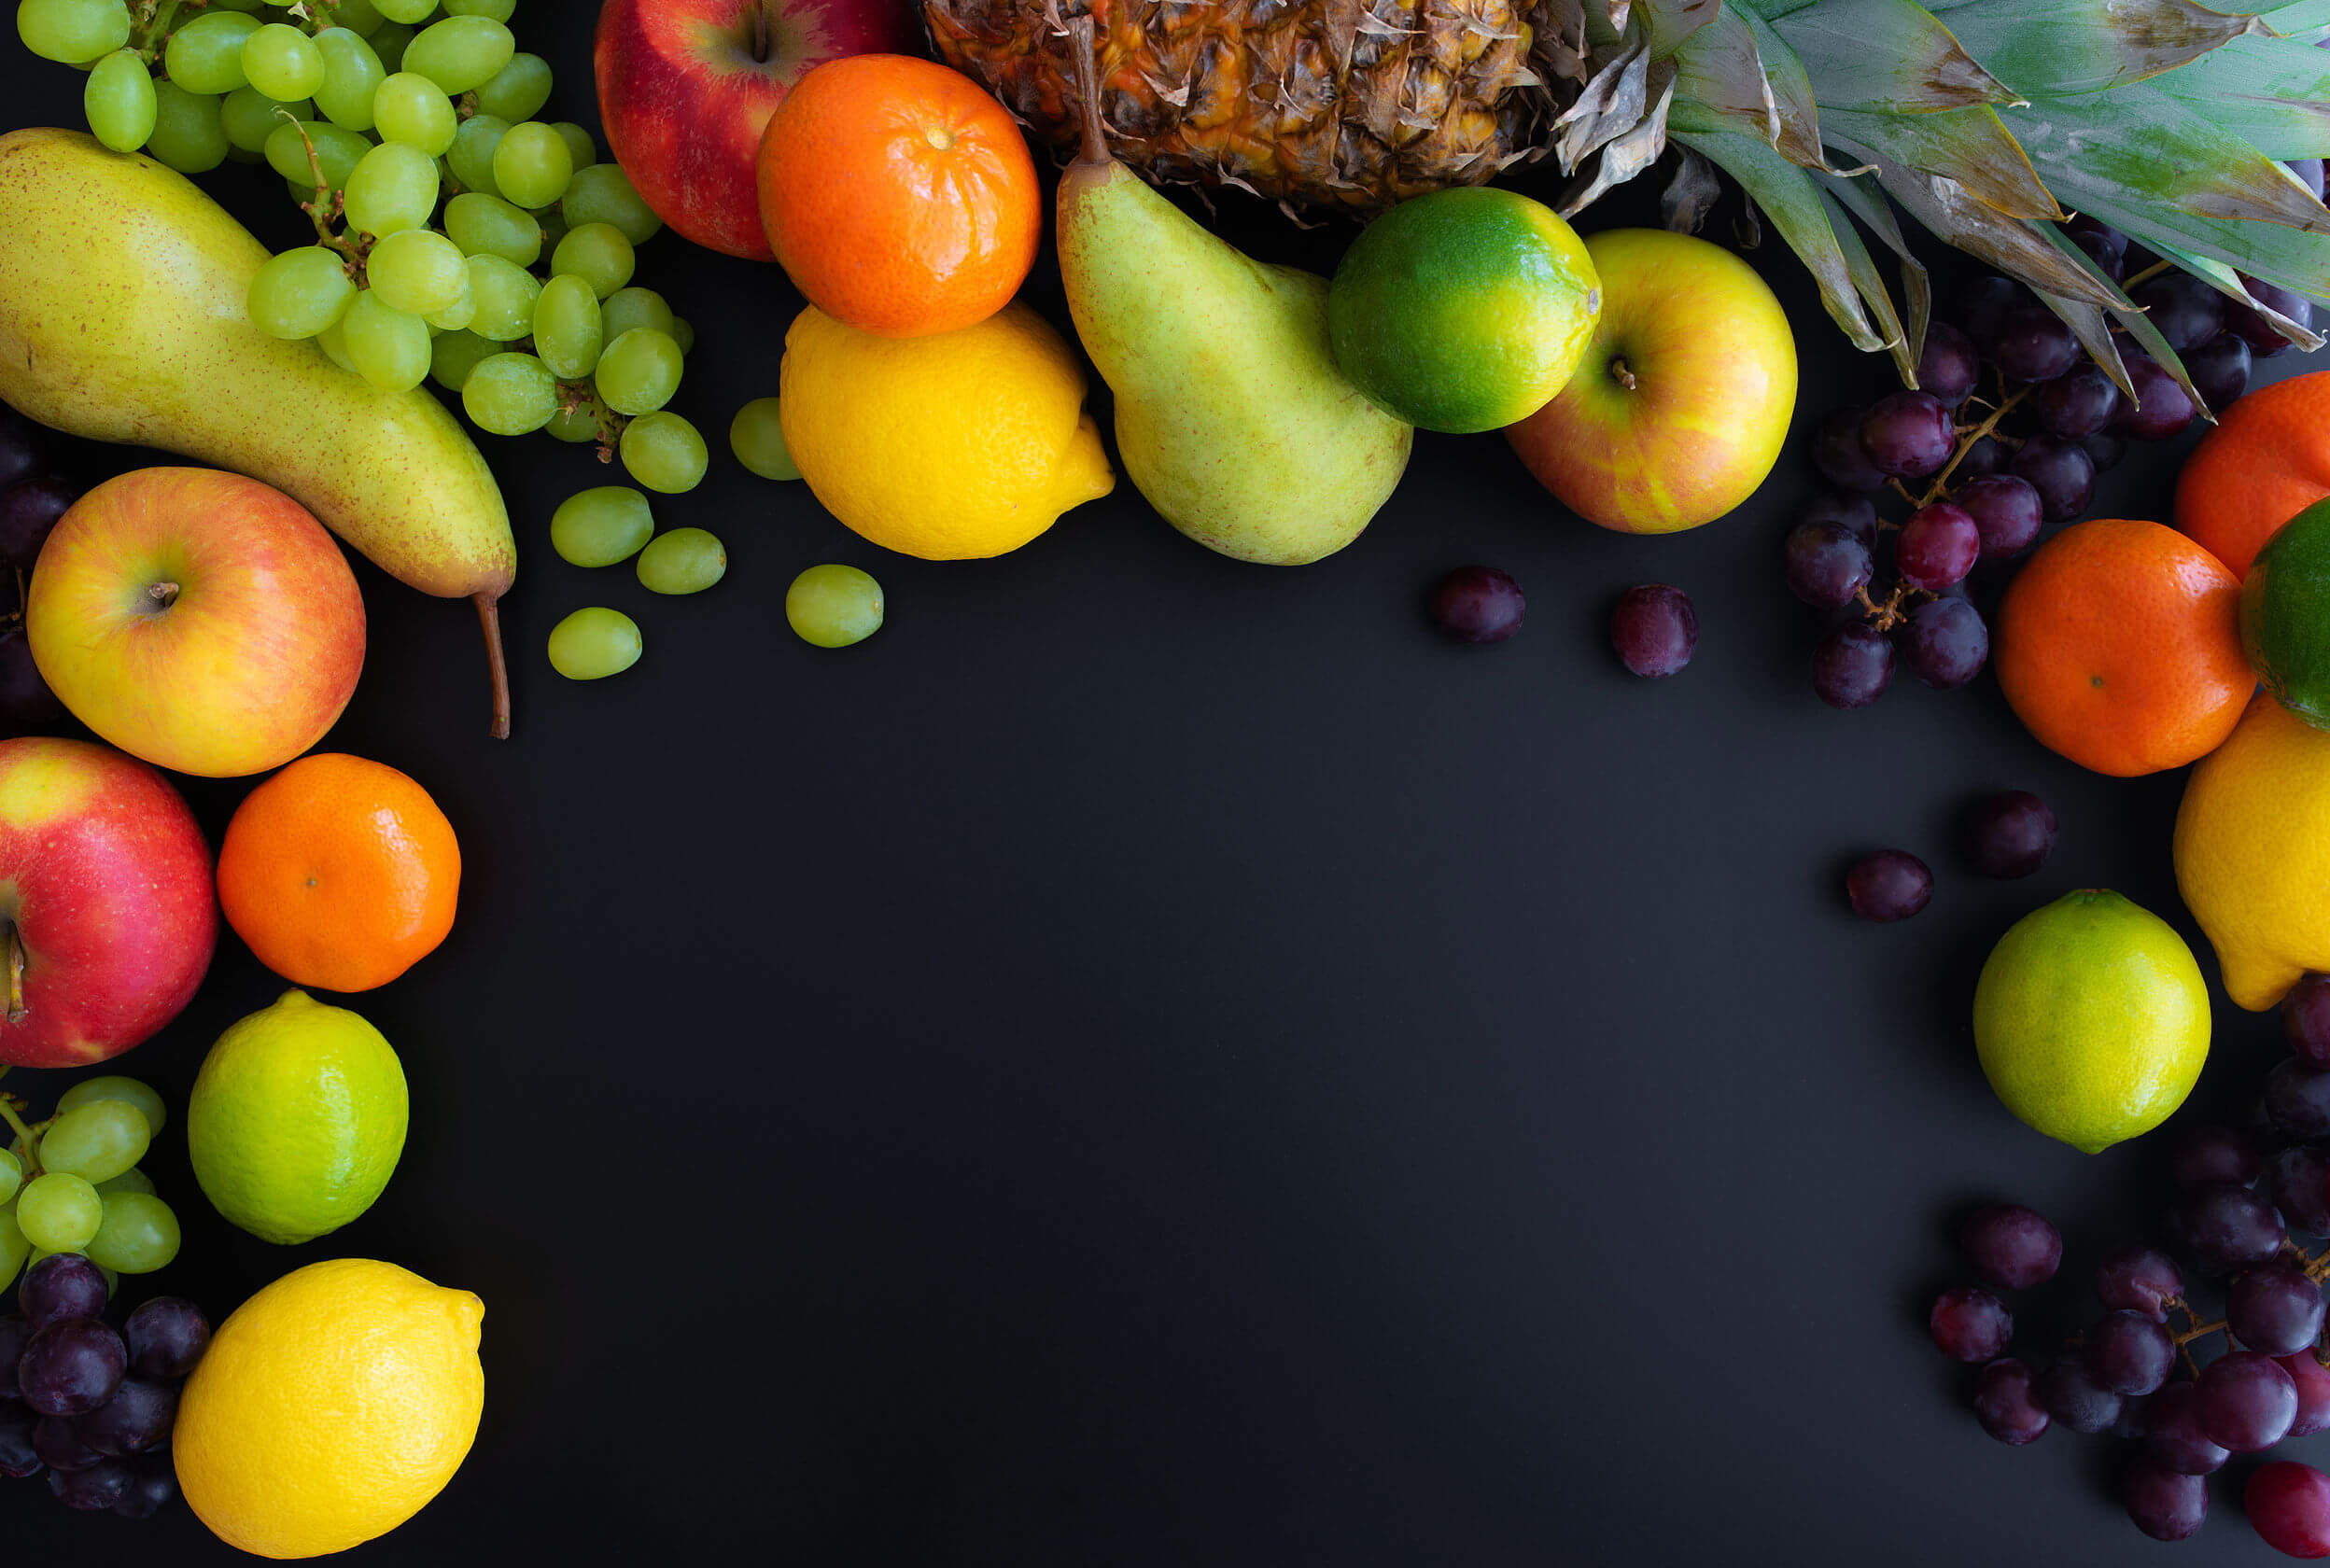 As frutas podem fazer parte de uma dieta equilibrada.